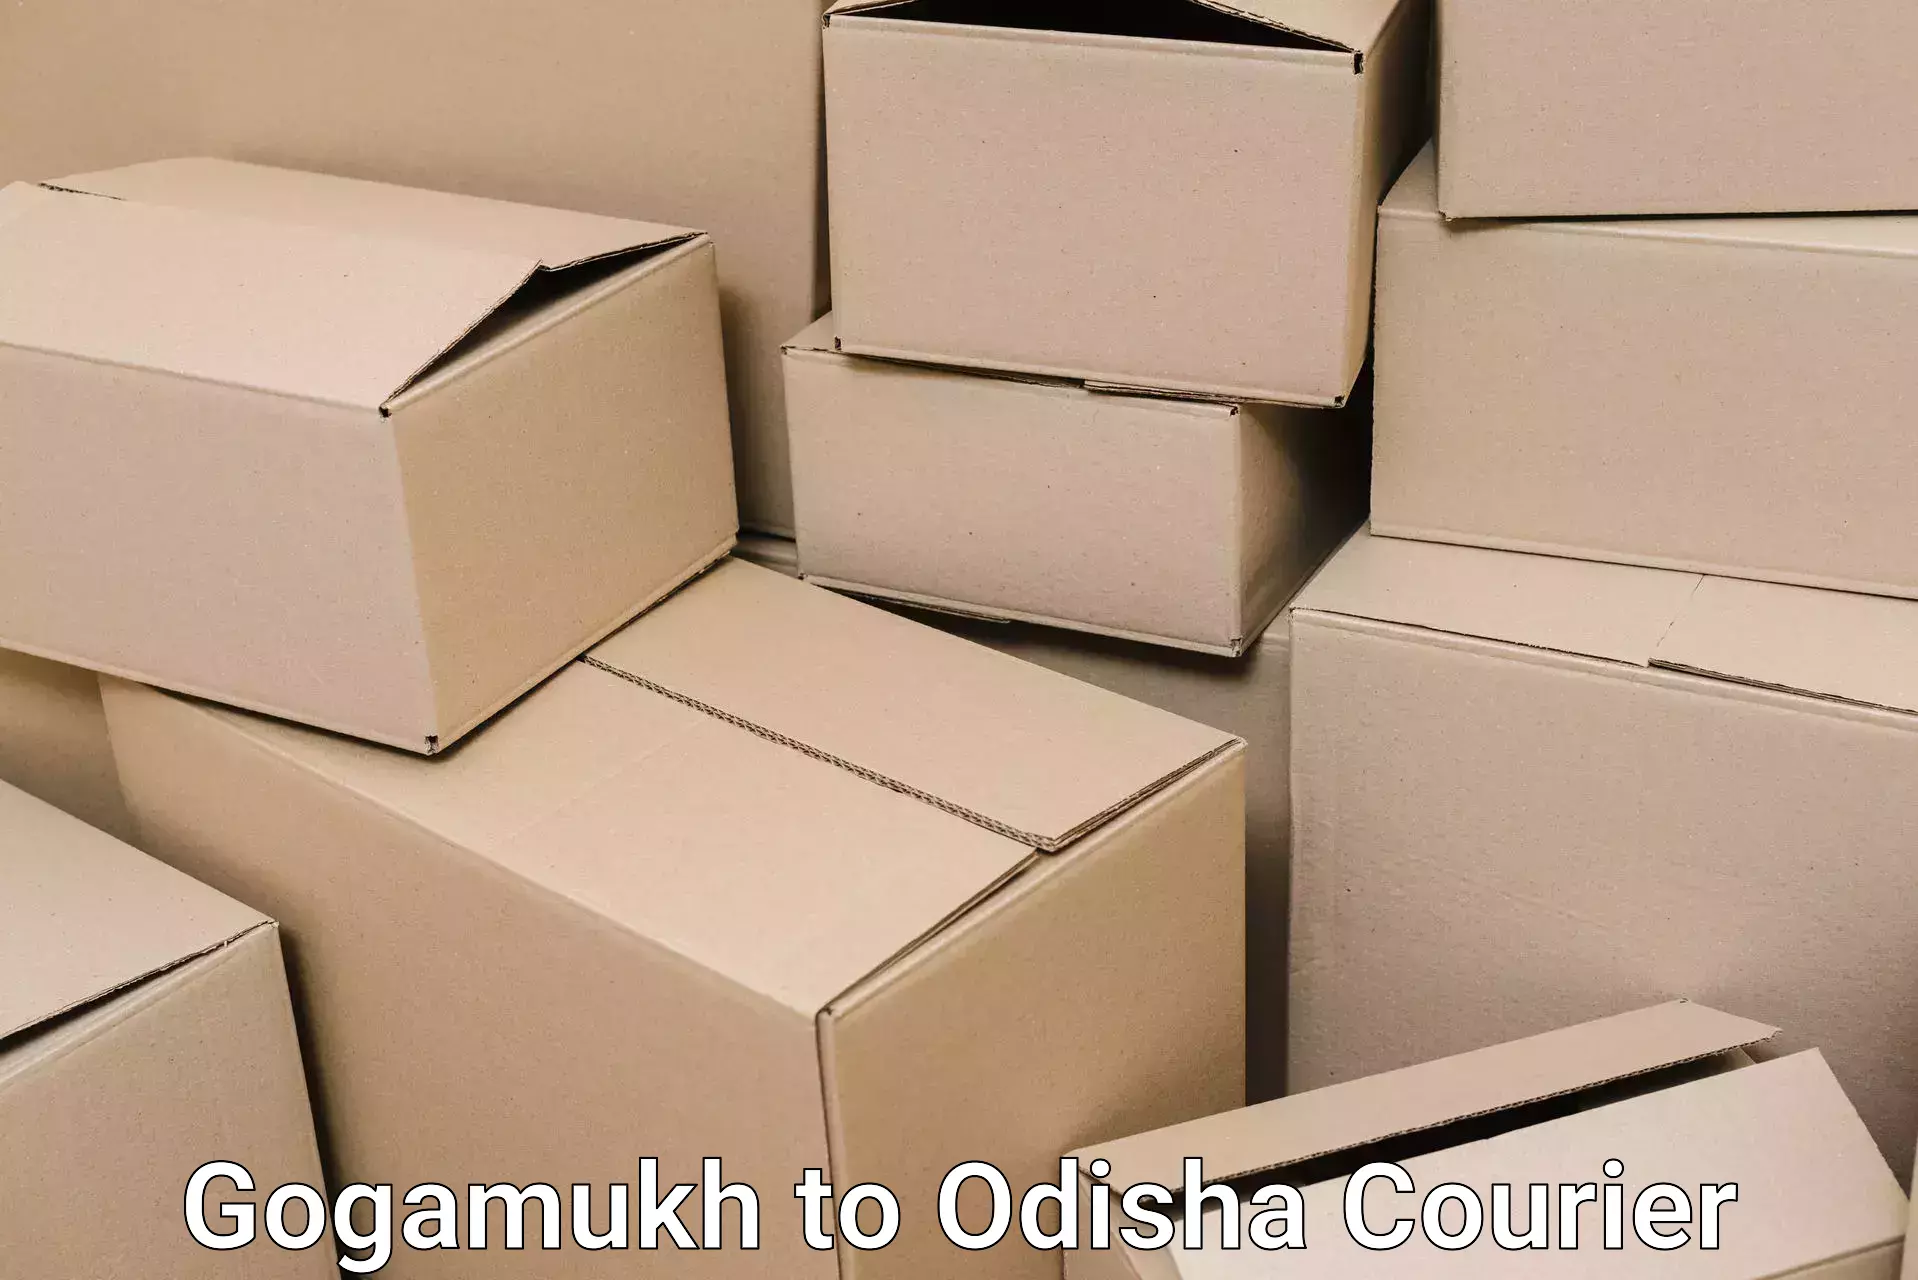 Home moving experts Gogamukh to Odisha